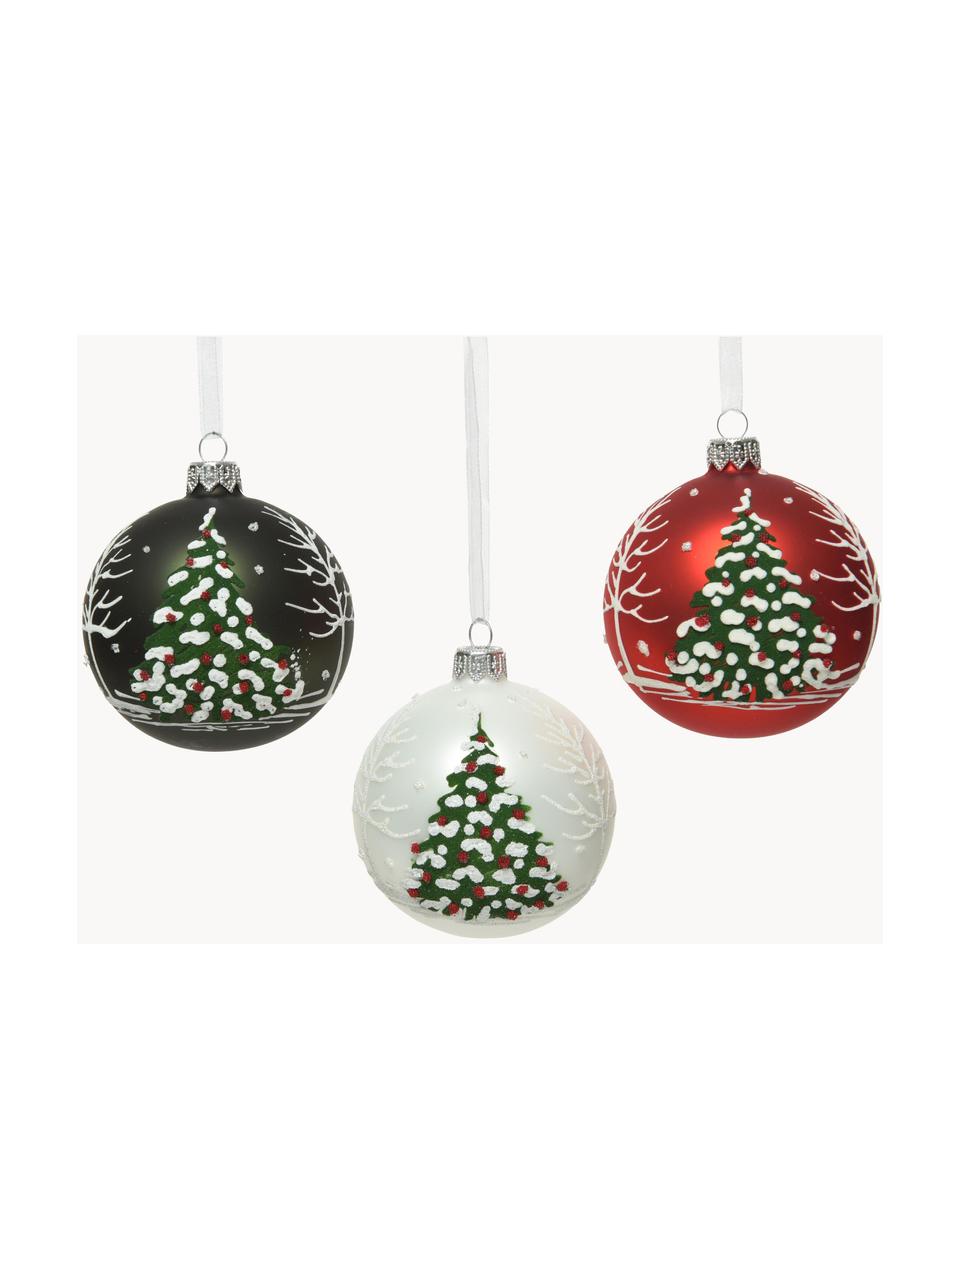 Sada vánočních ozdob Lahio, 3 díly, Tmavě zelená, bílá, červená, Ø 8 cm